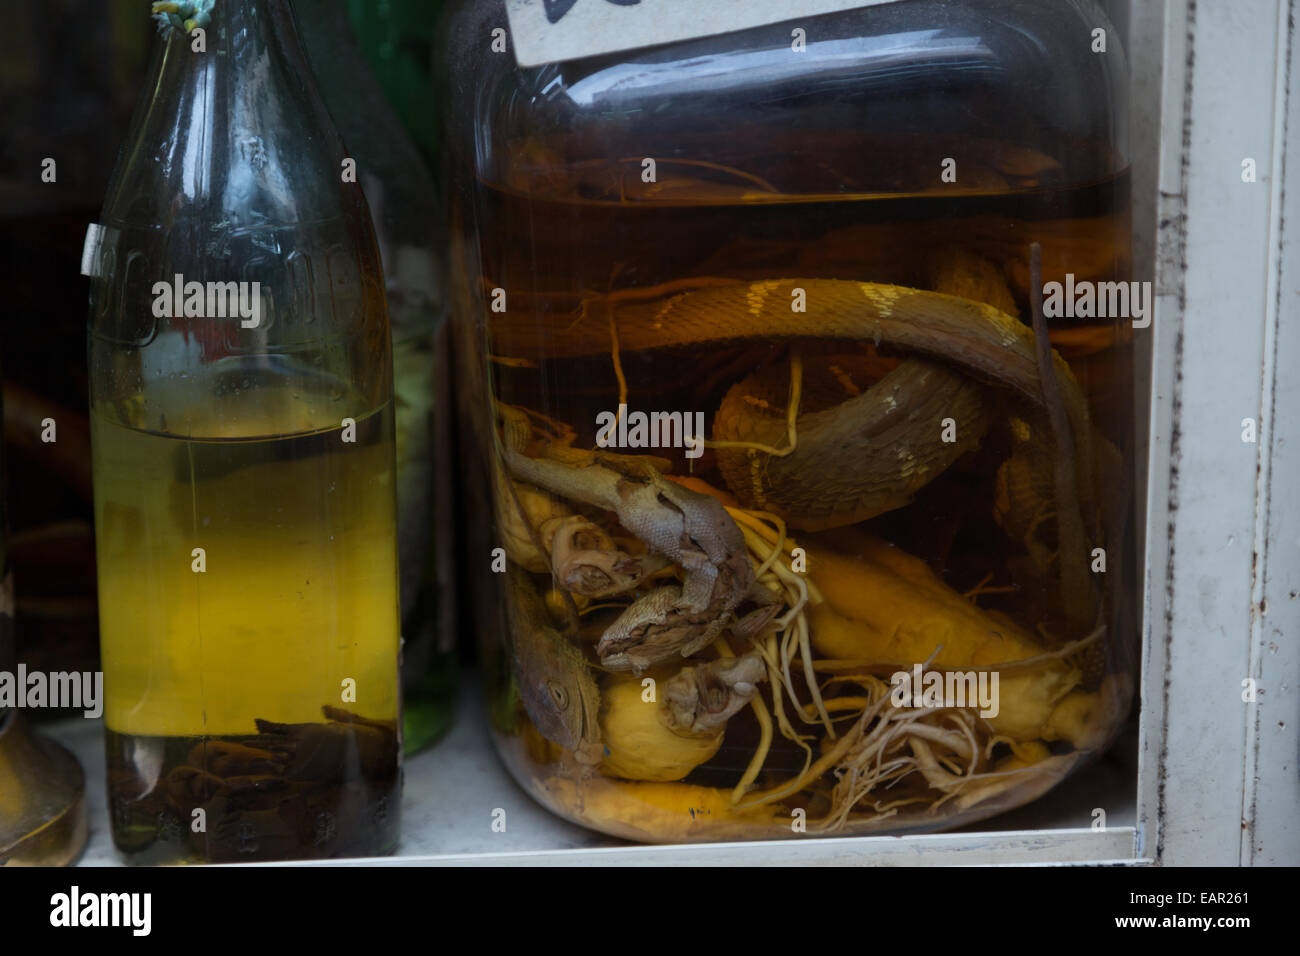 Una fotografia di alcuni serpenti e lucertole conservato per la ricerca scientifica in un liquido giallastro in un vaso. Foto Stock